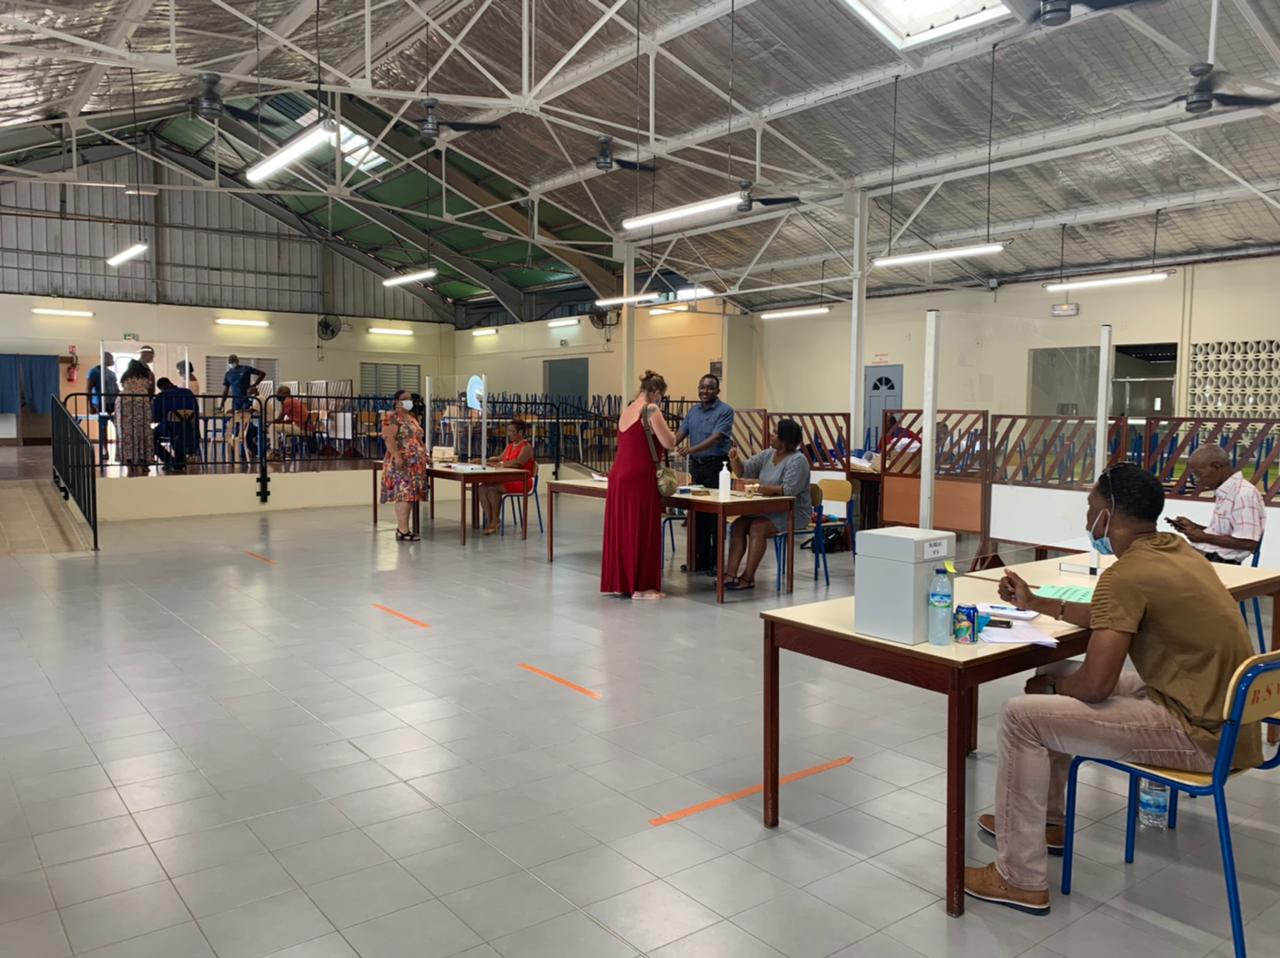     [PHOTOS] Premier tour des législatives en Martinique : affluence timide dans les bureaux de vote ce matin

